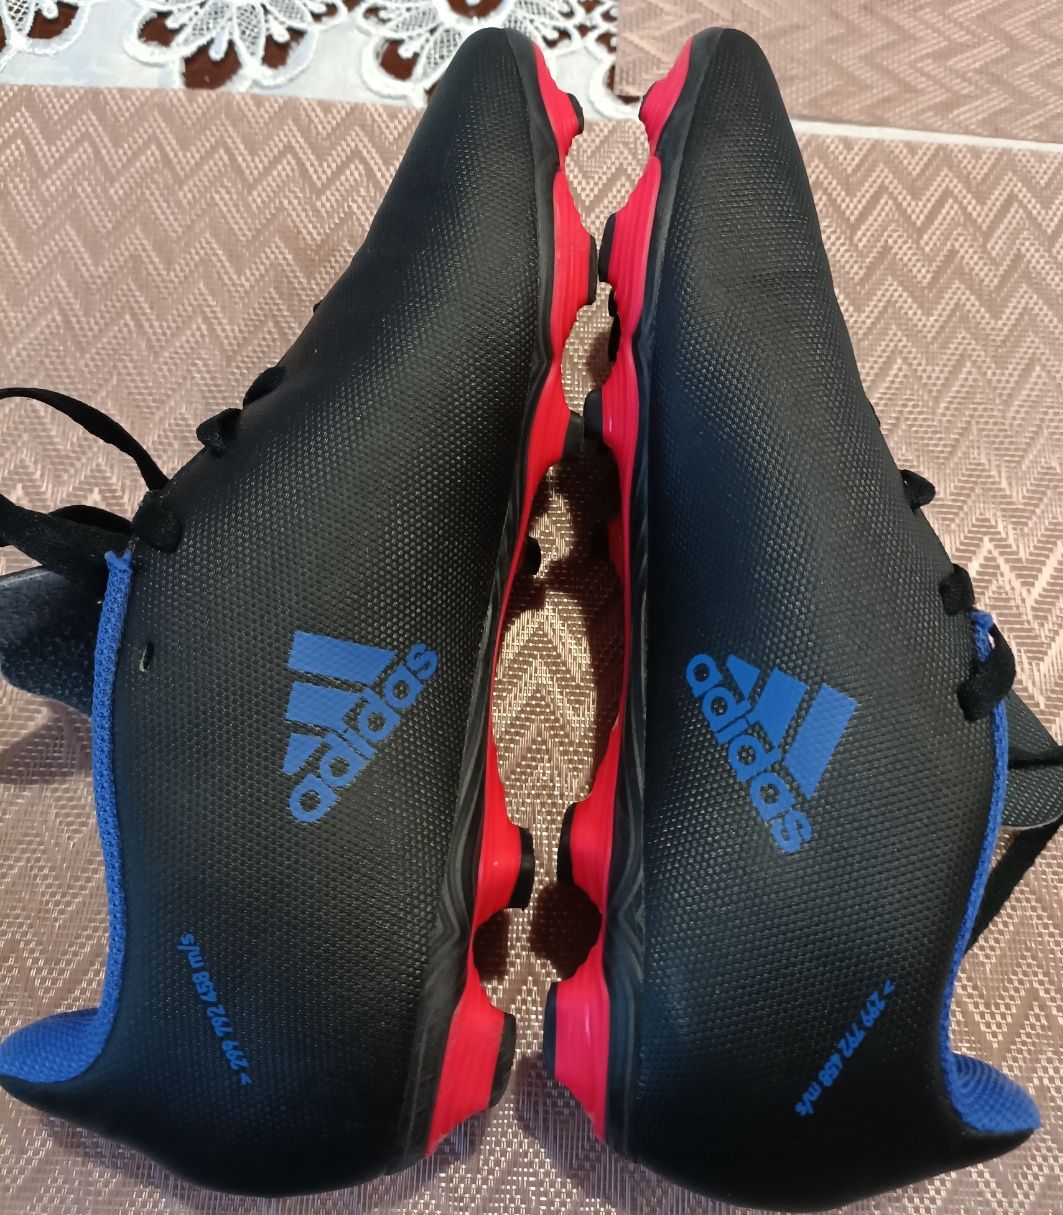 Buty piłkarskie korki Adidas x speedflow rozmiar 38